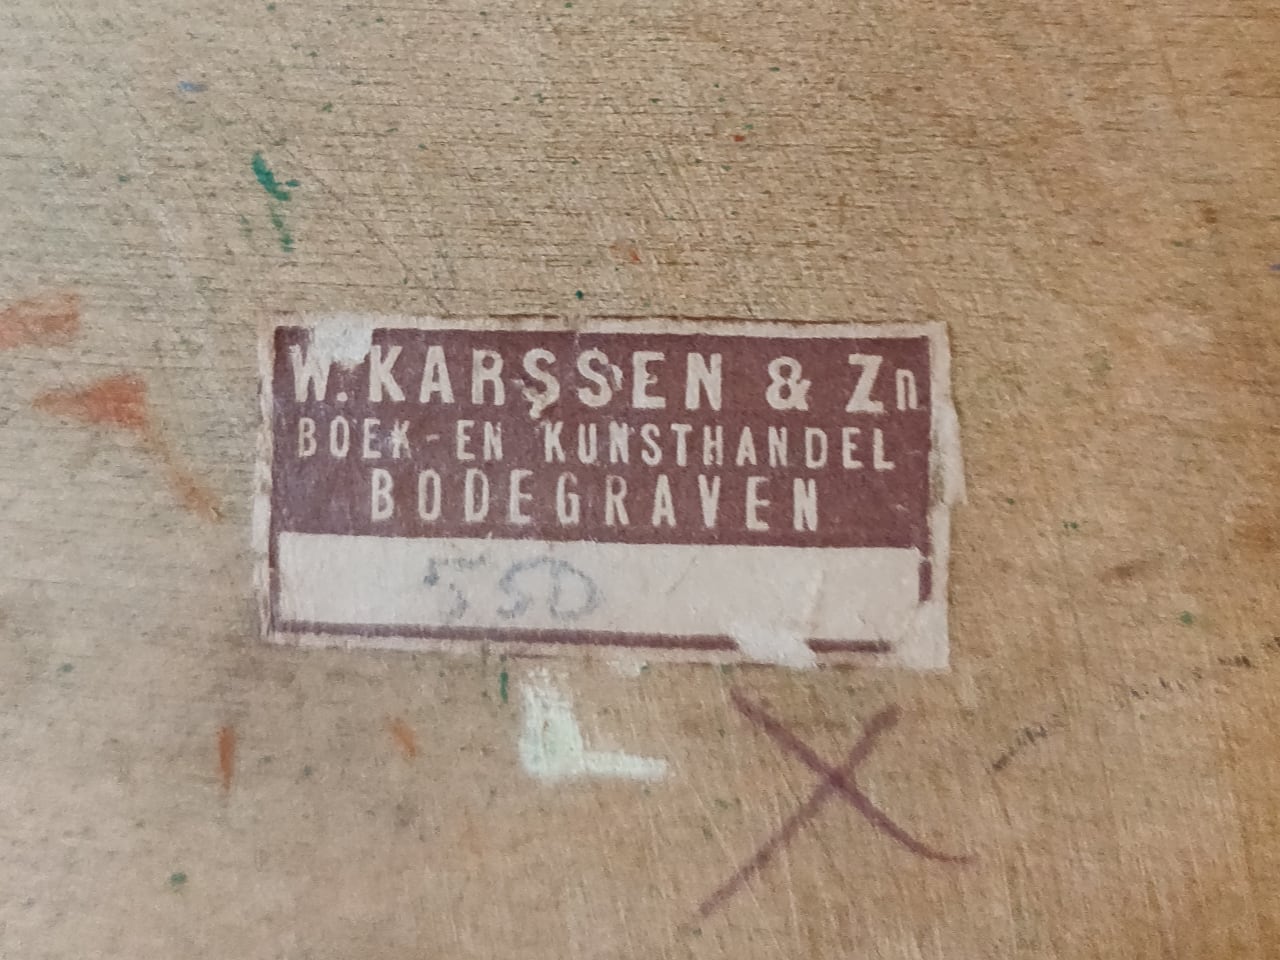 Sticker van de boek- en kunsthandel W. Karssen & Zn. uit Bodegraven (jaren 1930)